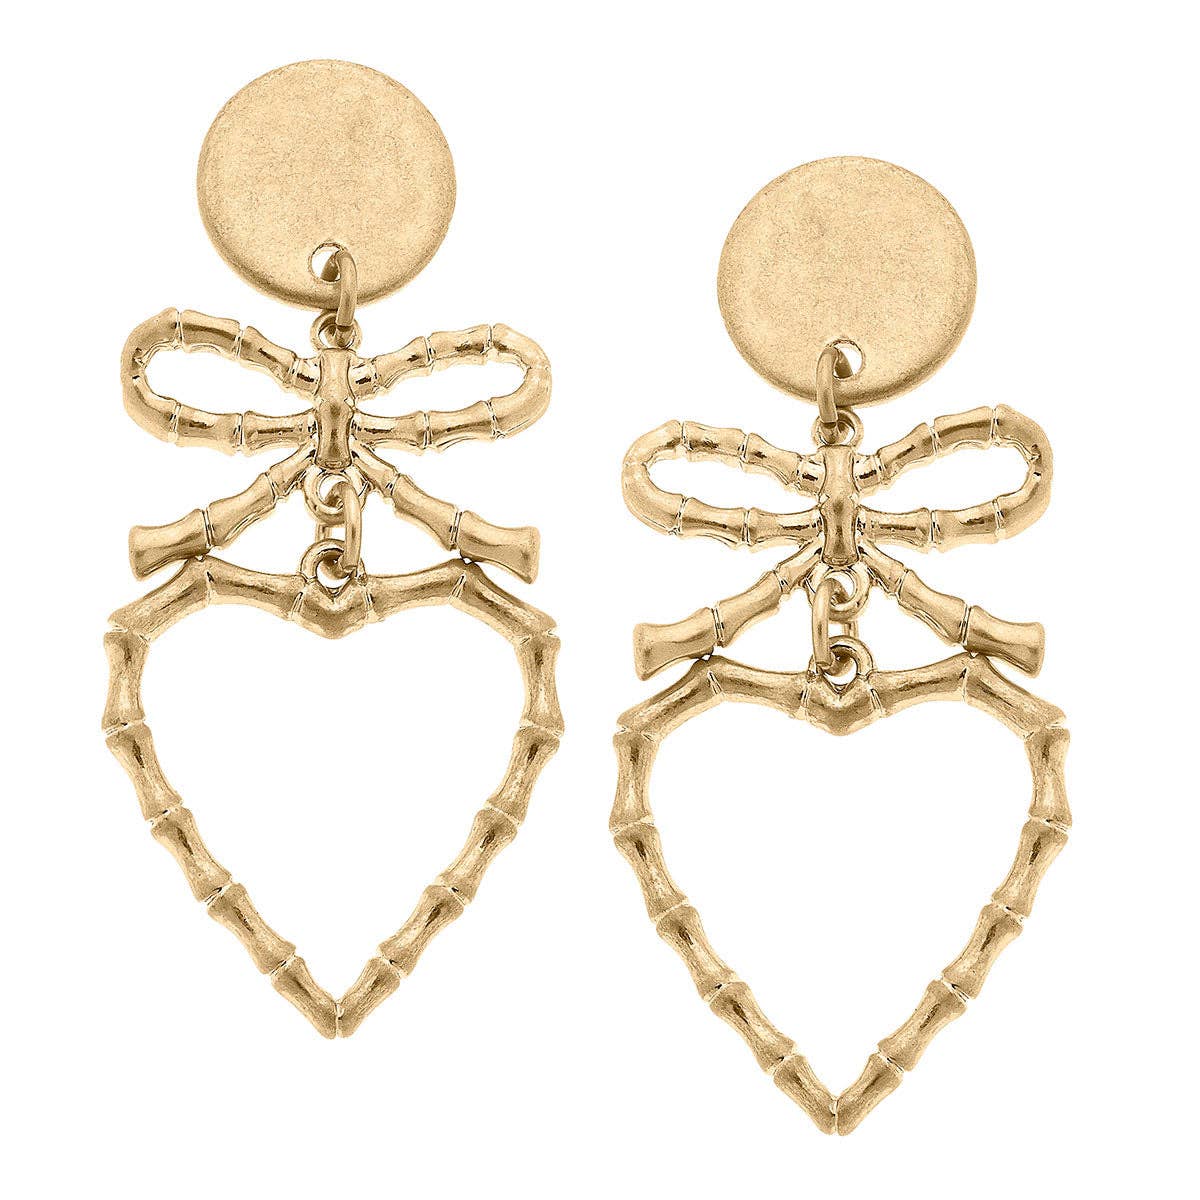 Avie Bamboo Heart & Bow Drop Earrings in Worn Gold